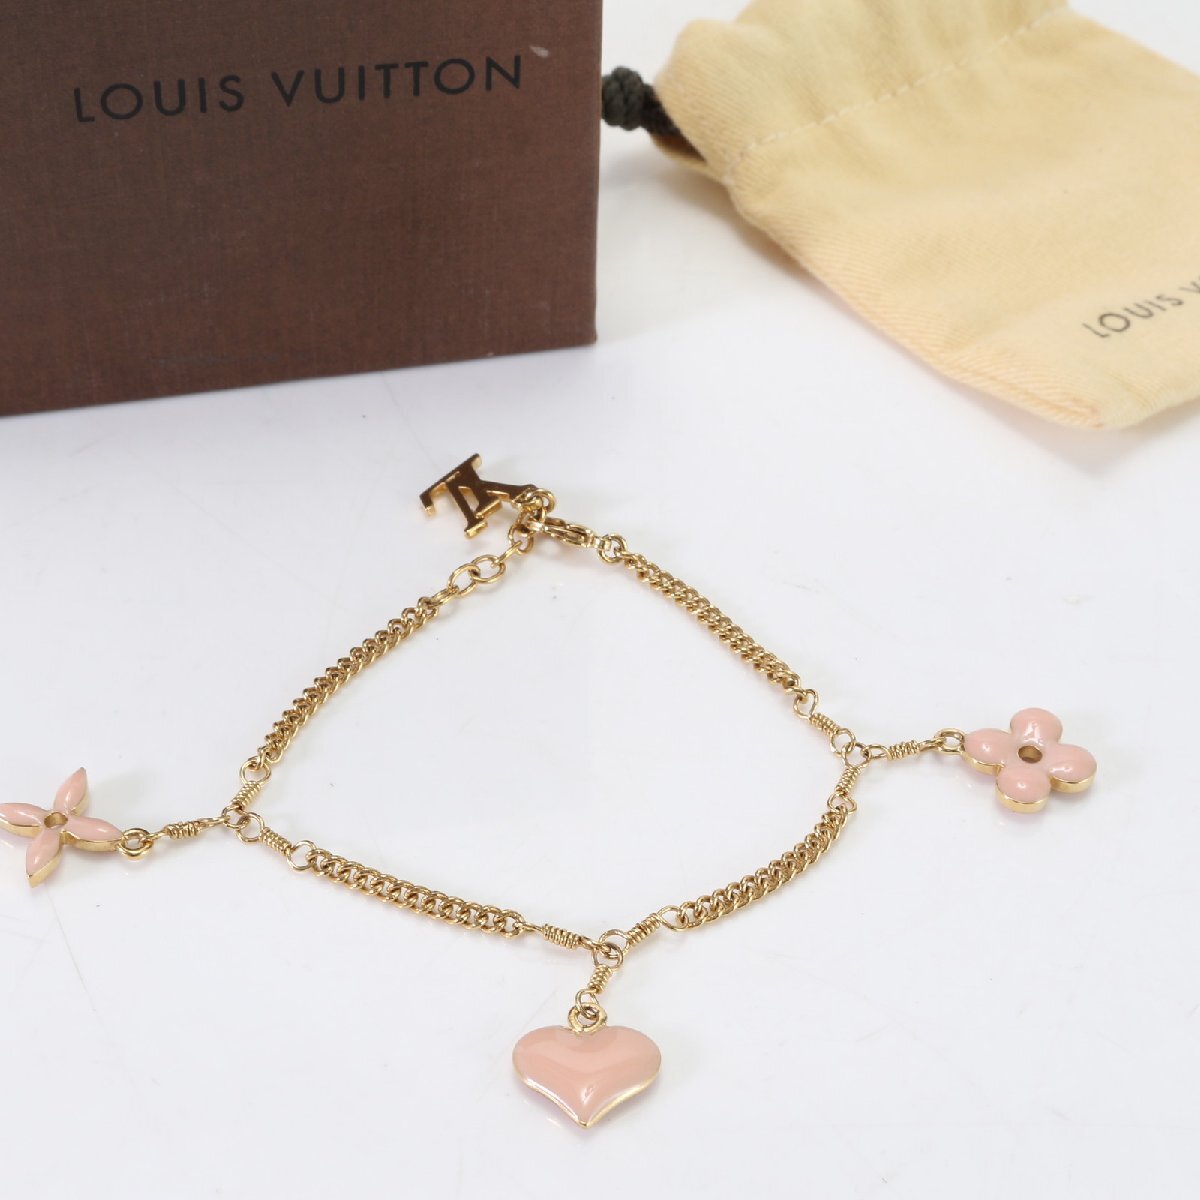 1 jpy # beautiful goods # Louis Vuitton # brass re Suite monogram bracele #M65614 accessory Gold Pink Lady -sYYT 1128-E69